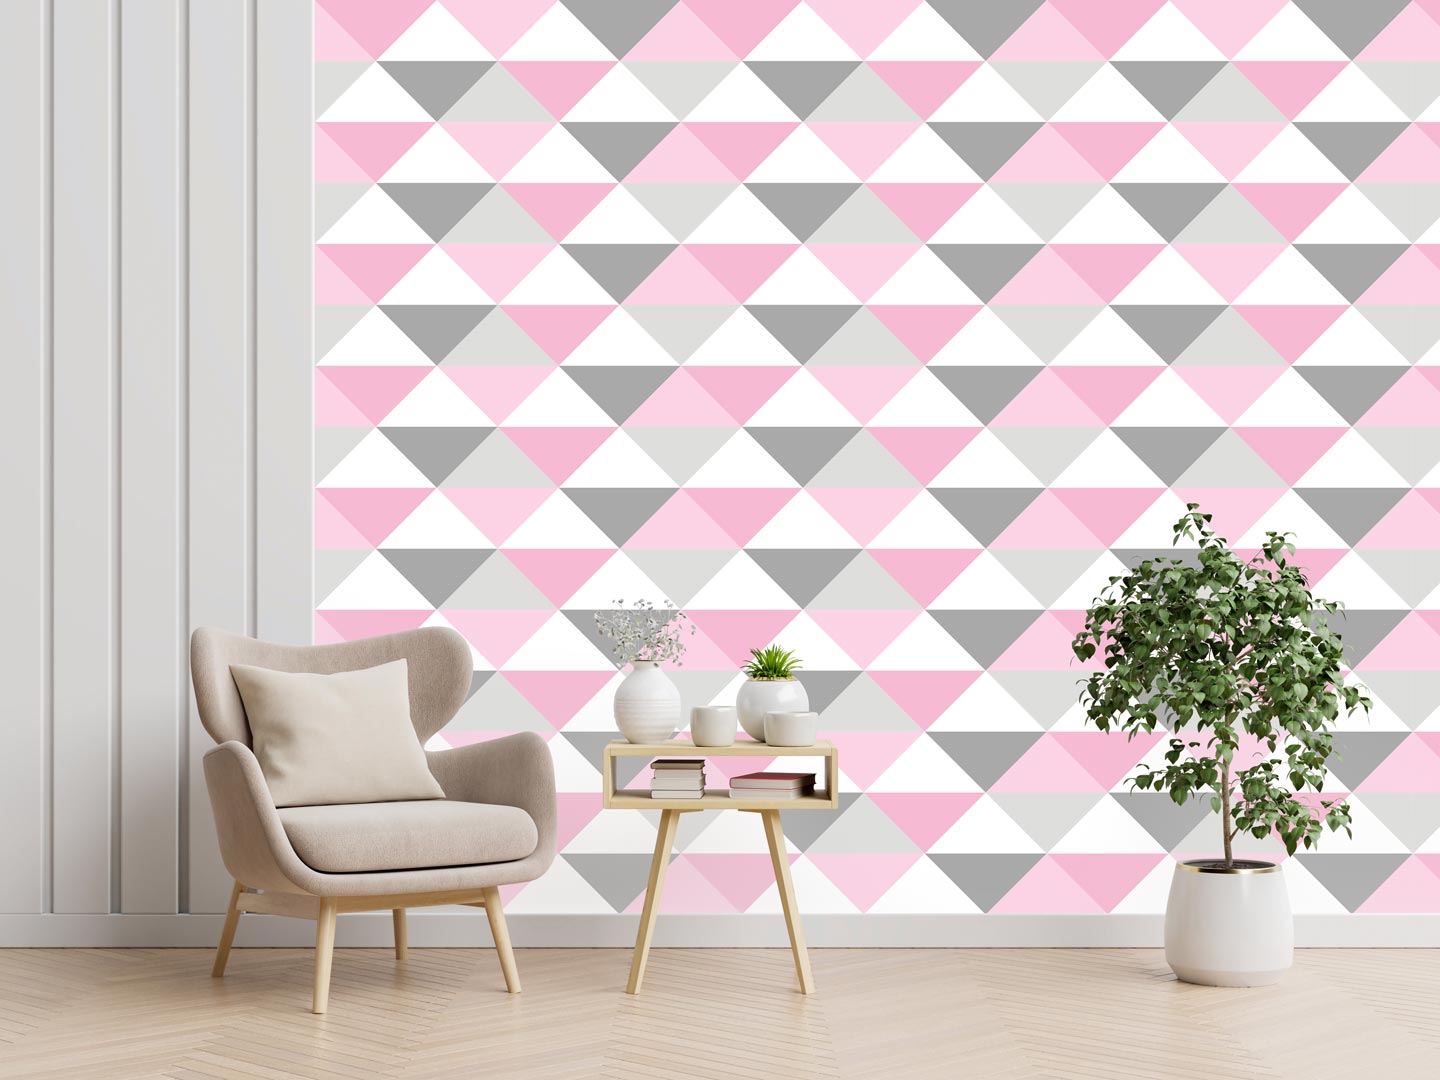 Geometrická škandinávska tapeta s bielo-sivo-ružovými pastelovými TROJUHOLNÍKmi 33 cm - Dekoori obrázok 2